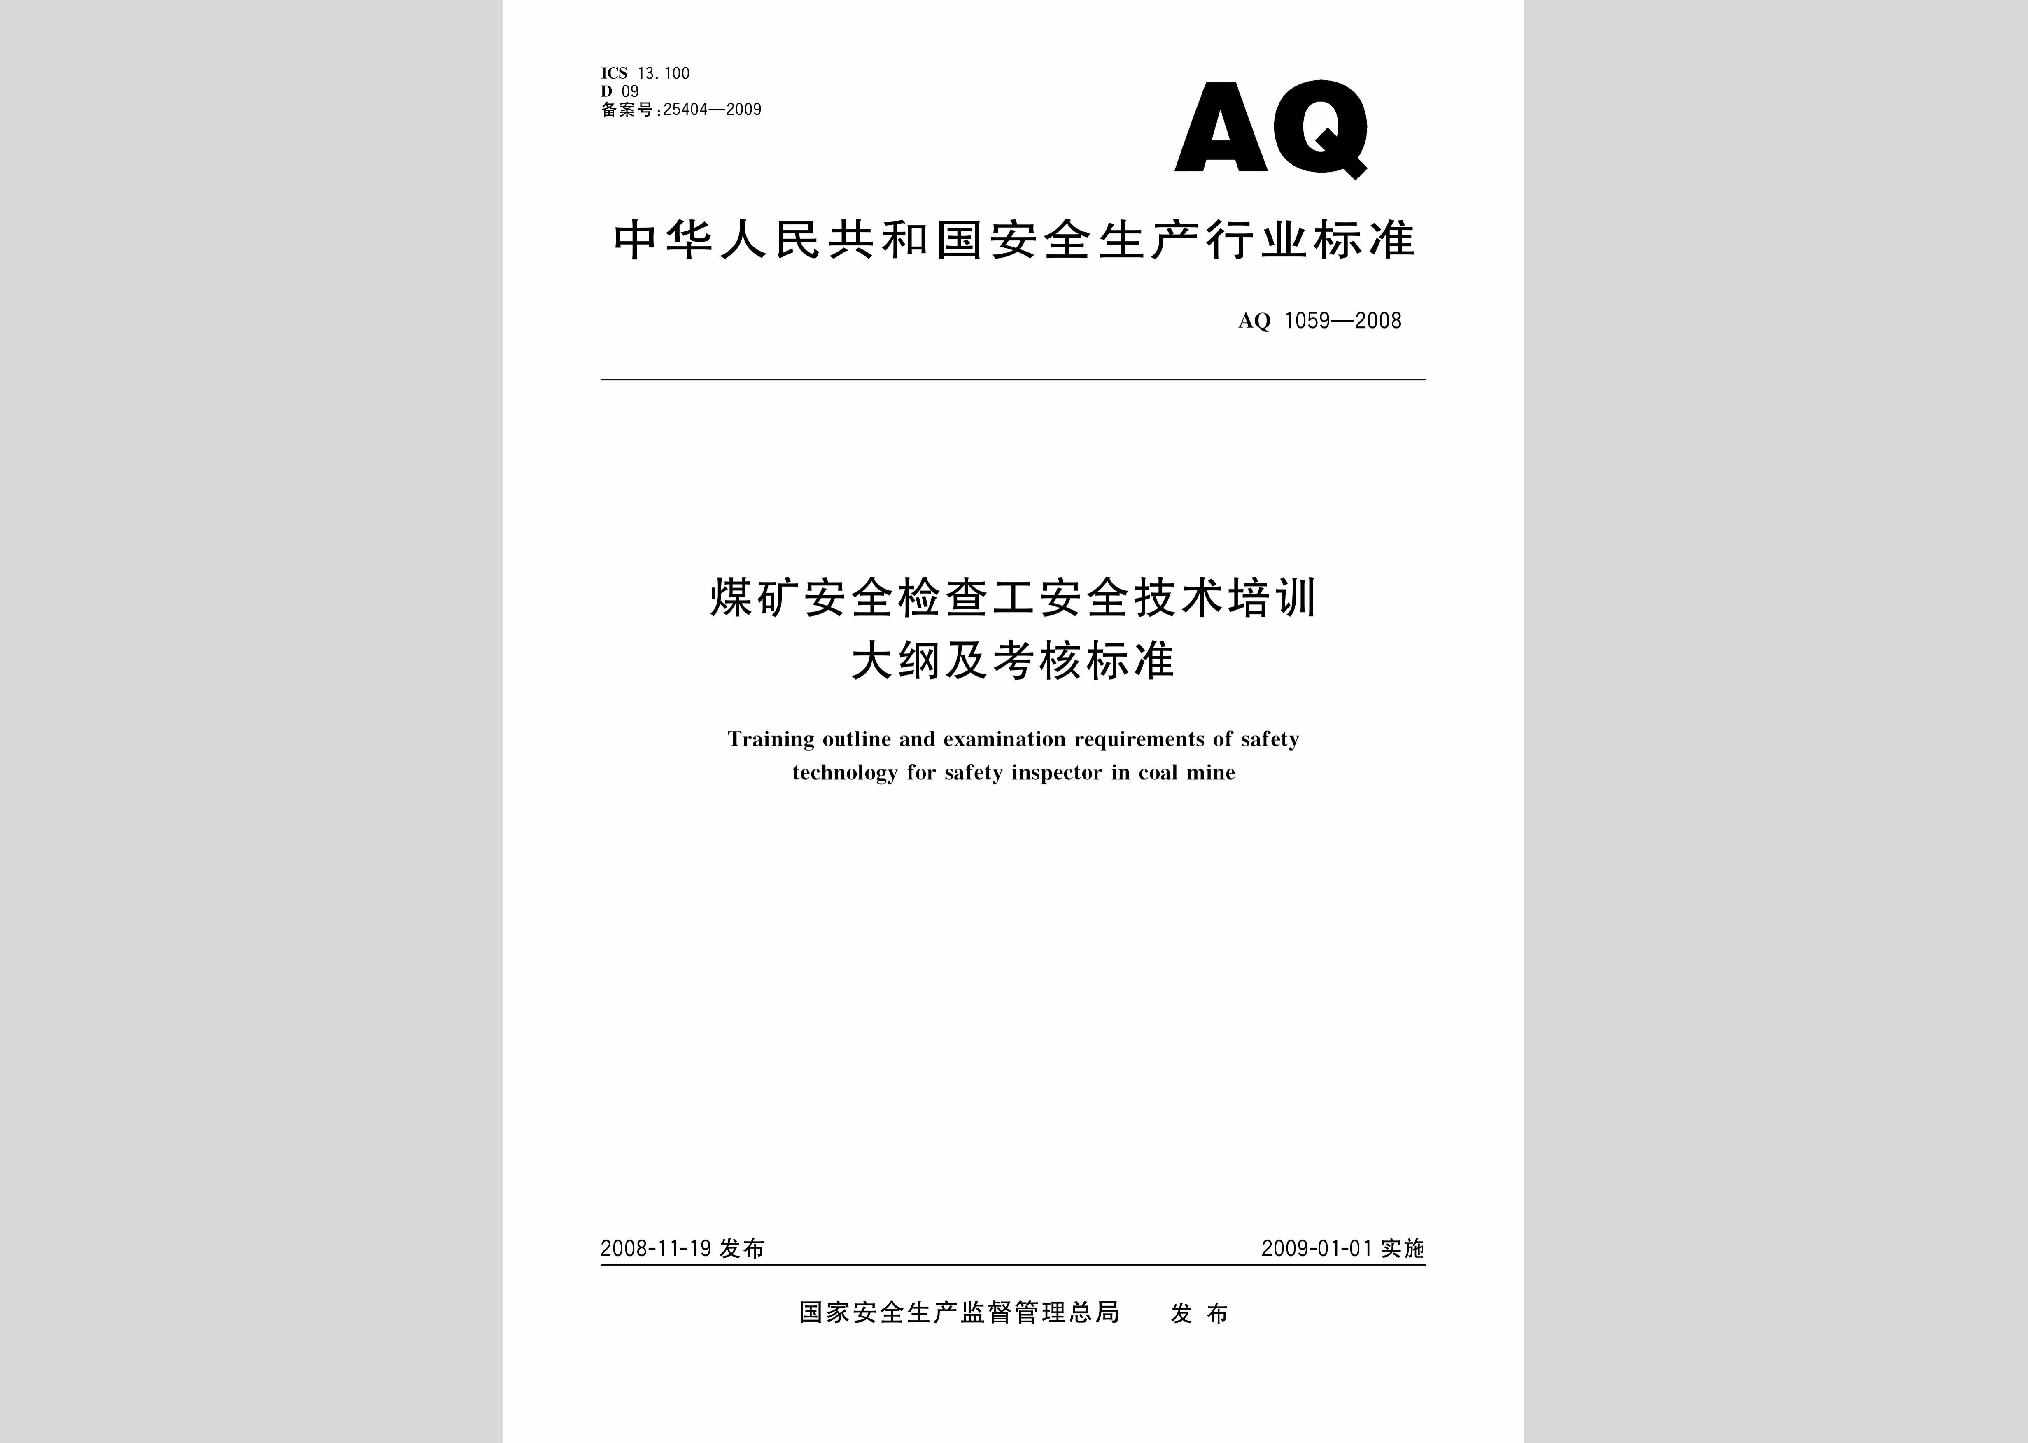 AQ1059-2008：煤矿安全检查工安全技术培训大纲及考核标准